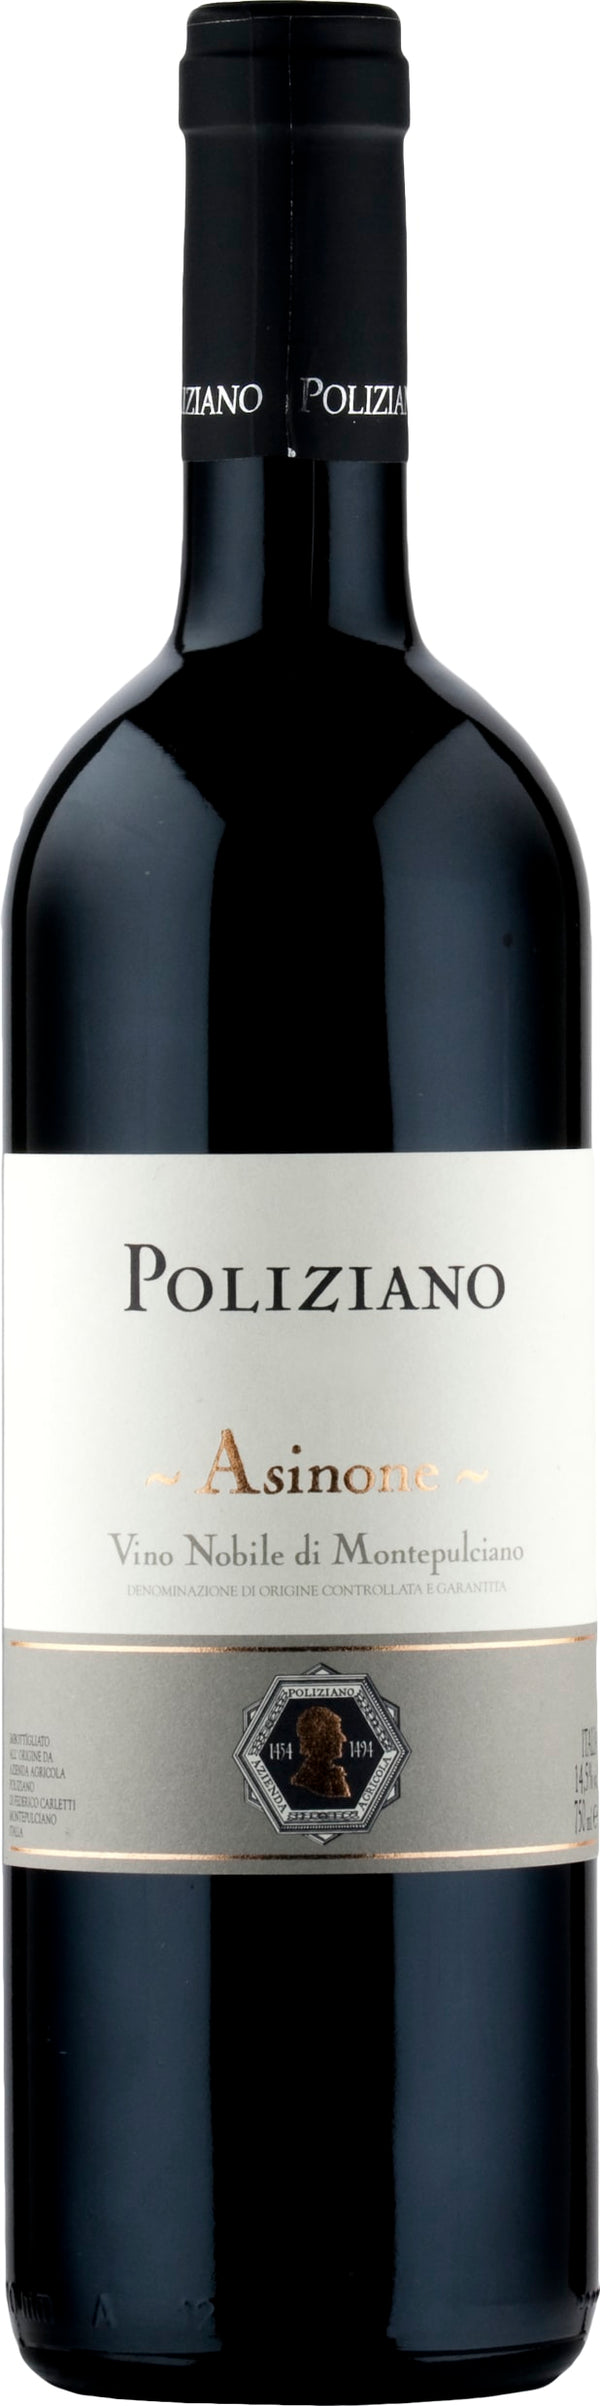 Poliziano Asinone Vino Nobile di Montepulciano DOCG 2020 6x75cl - Just Wines 